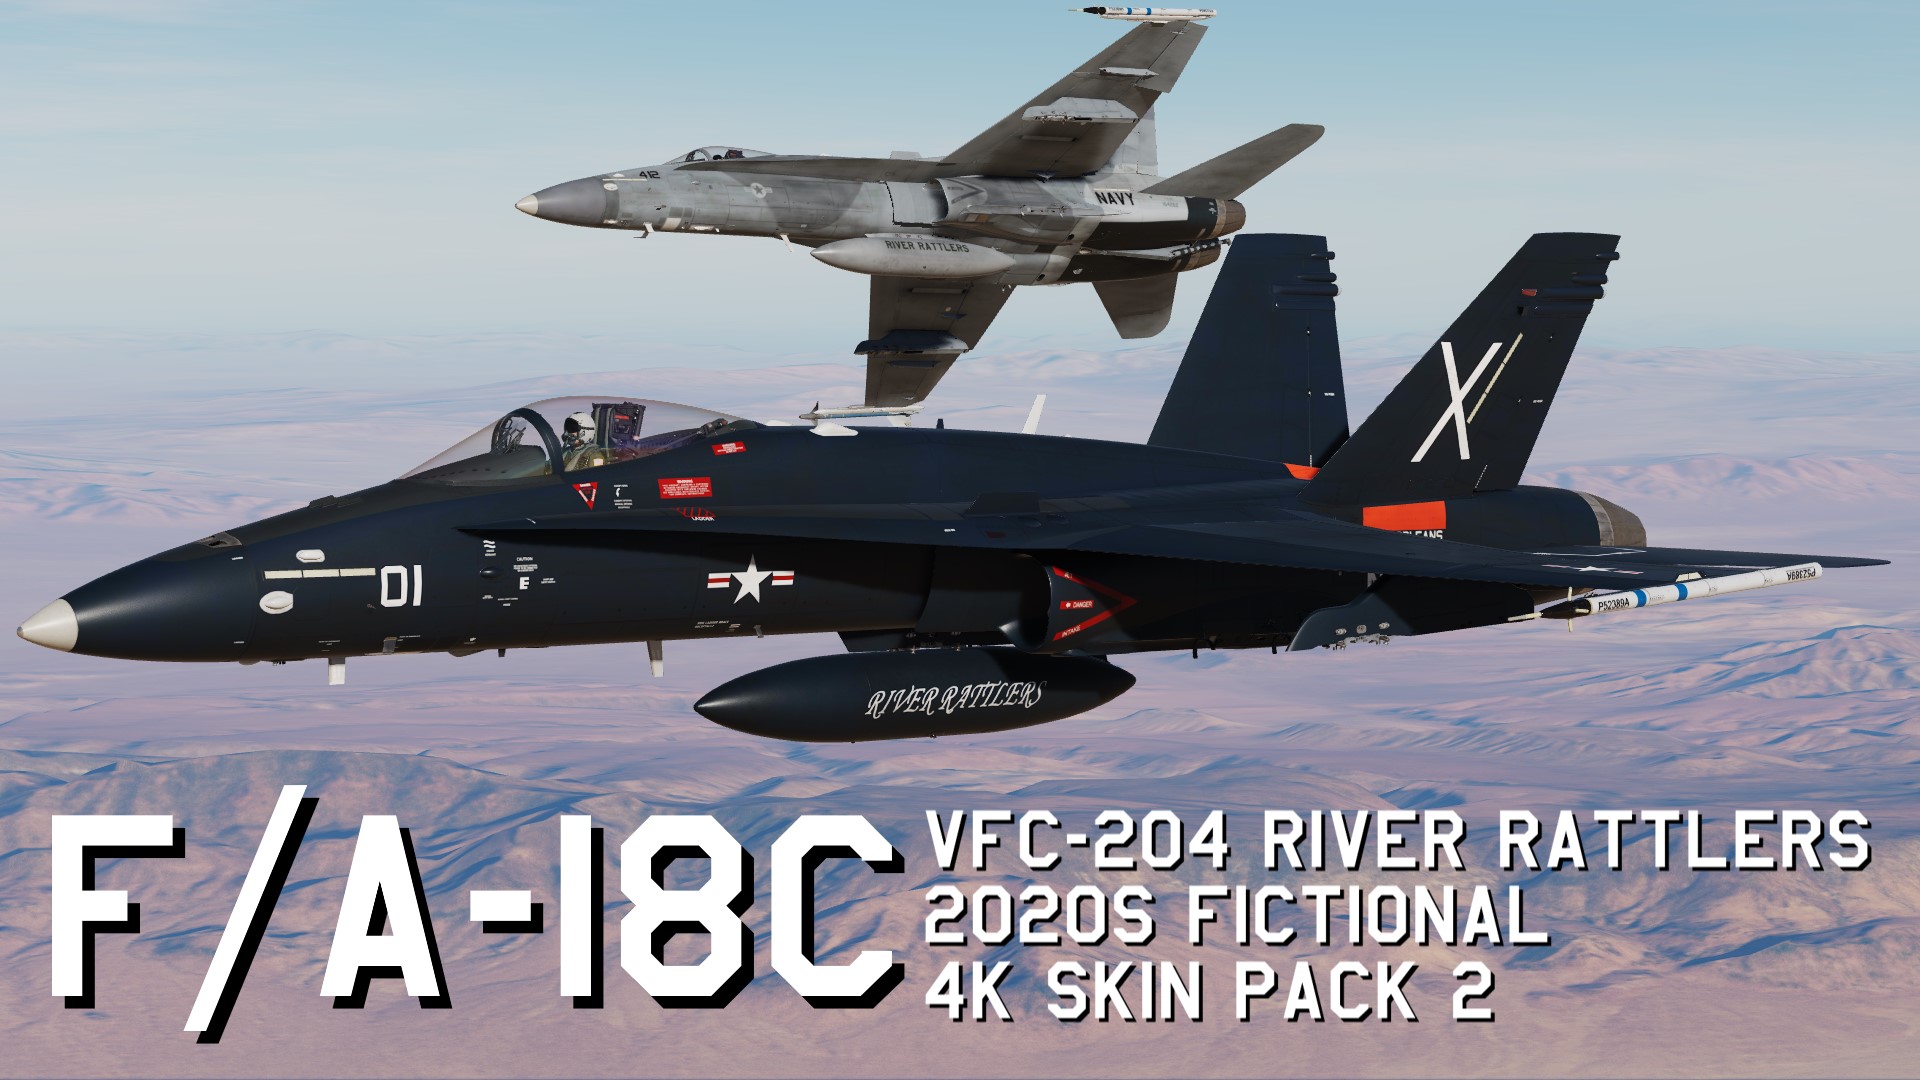 VFC-204 River Rattlers 2020s fictional 4K Skin Pack 2